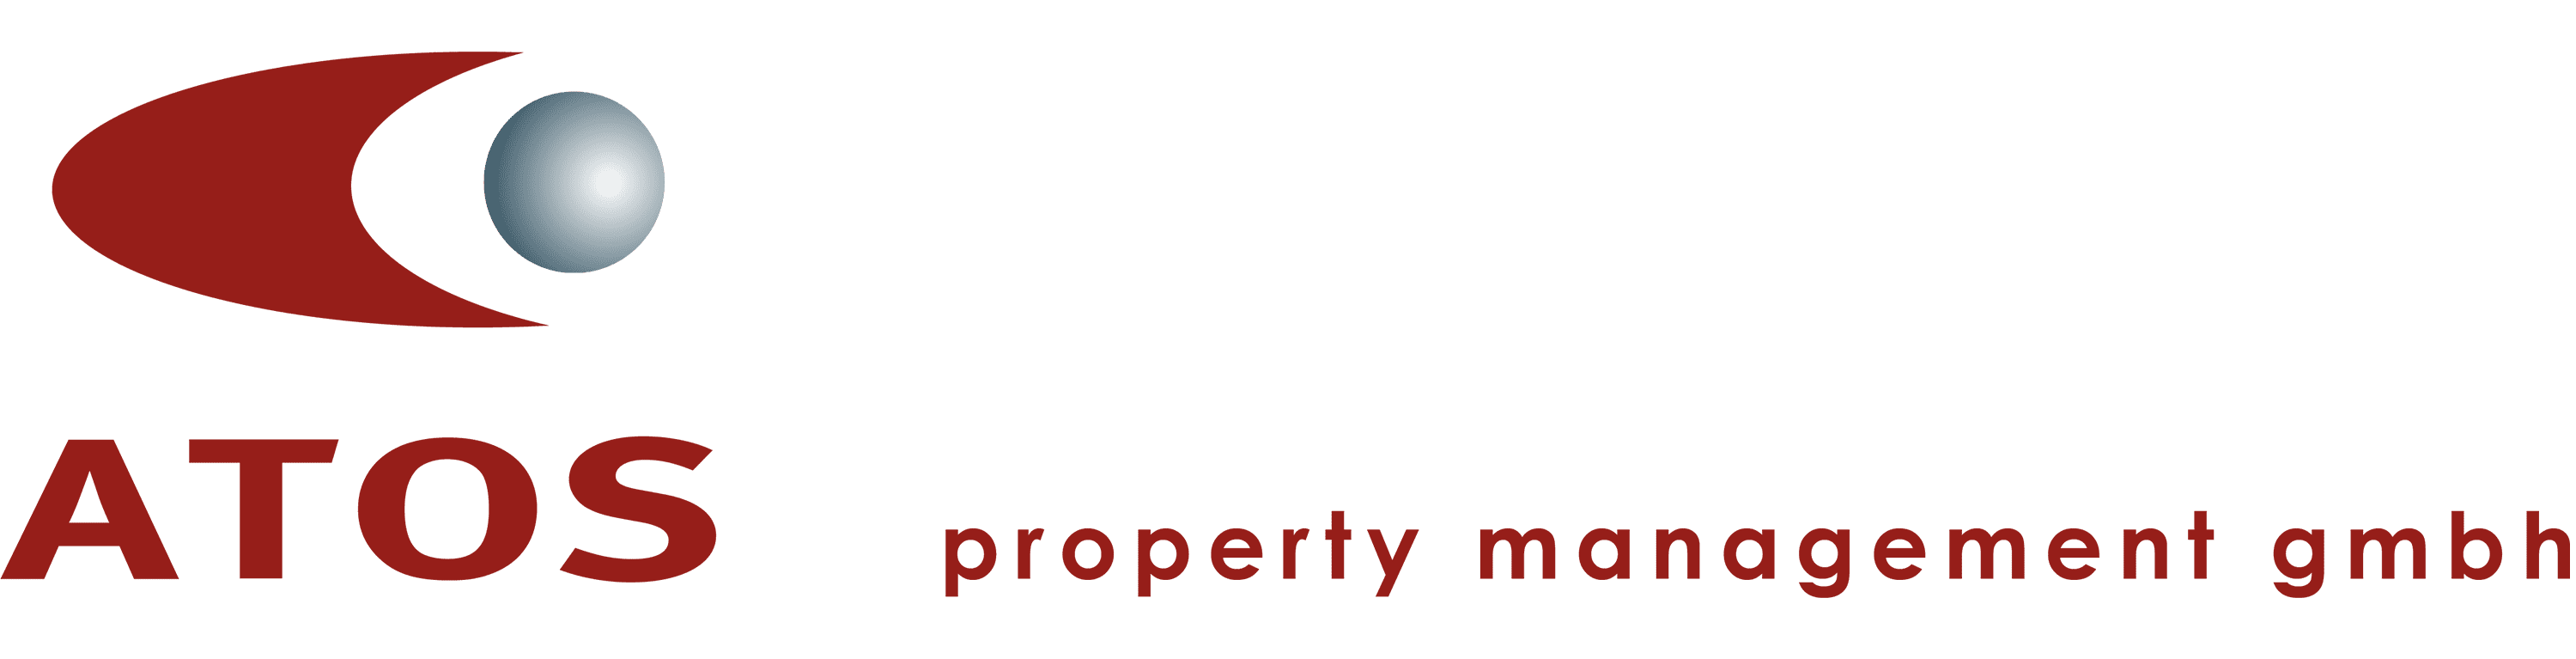 Das Logo der ATOS Property Management GmbH